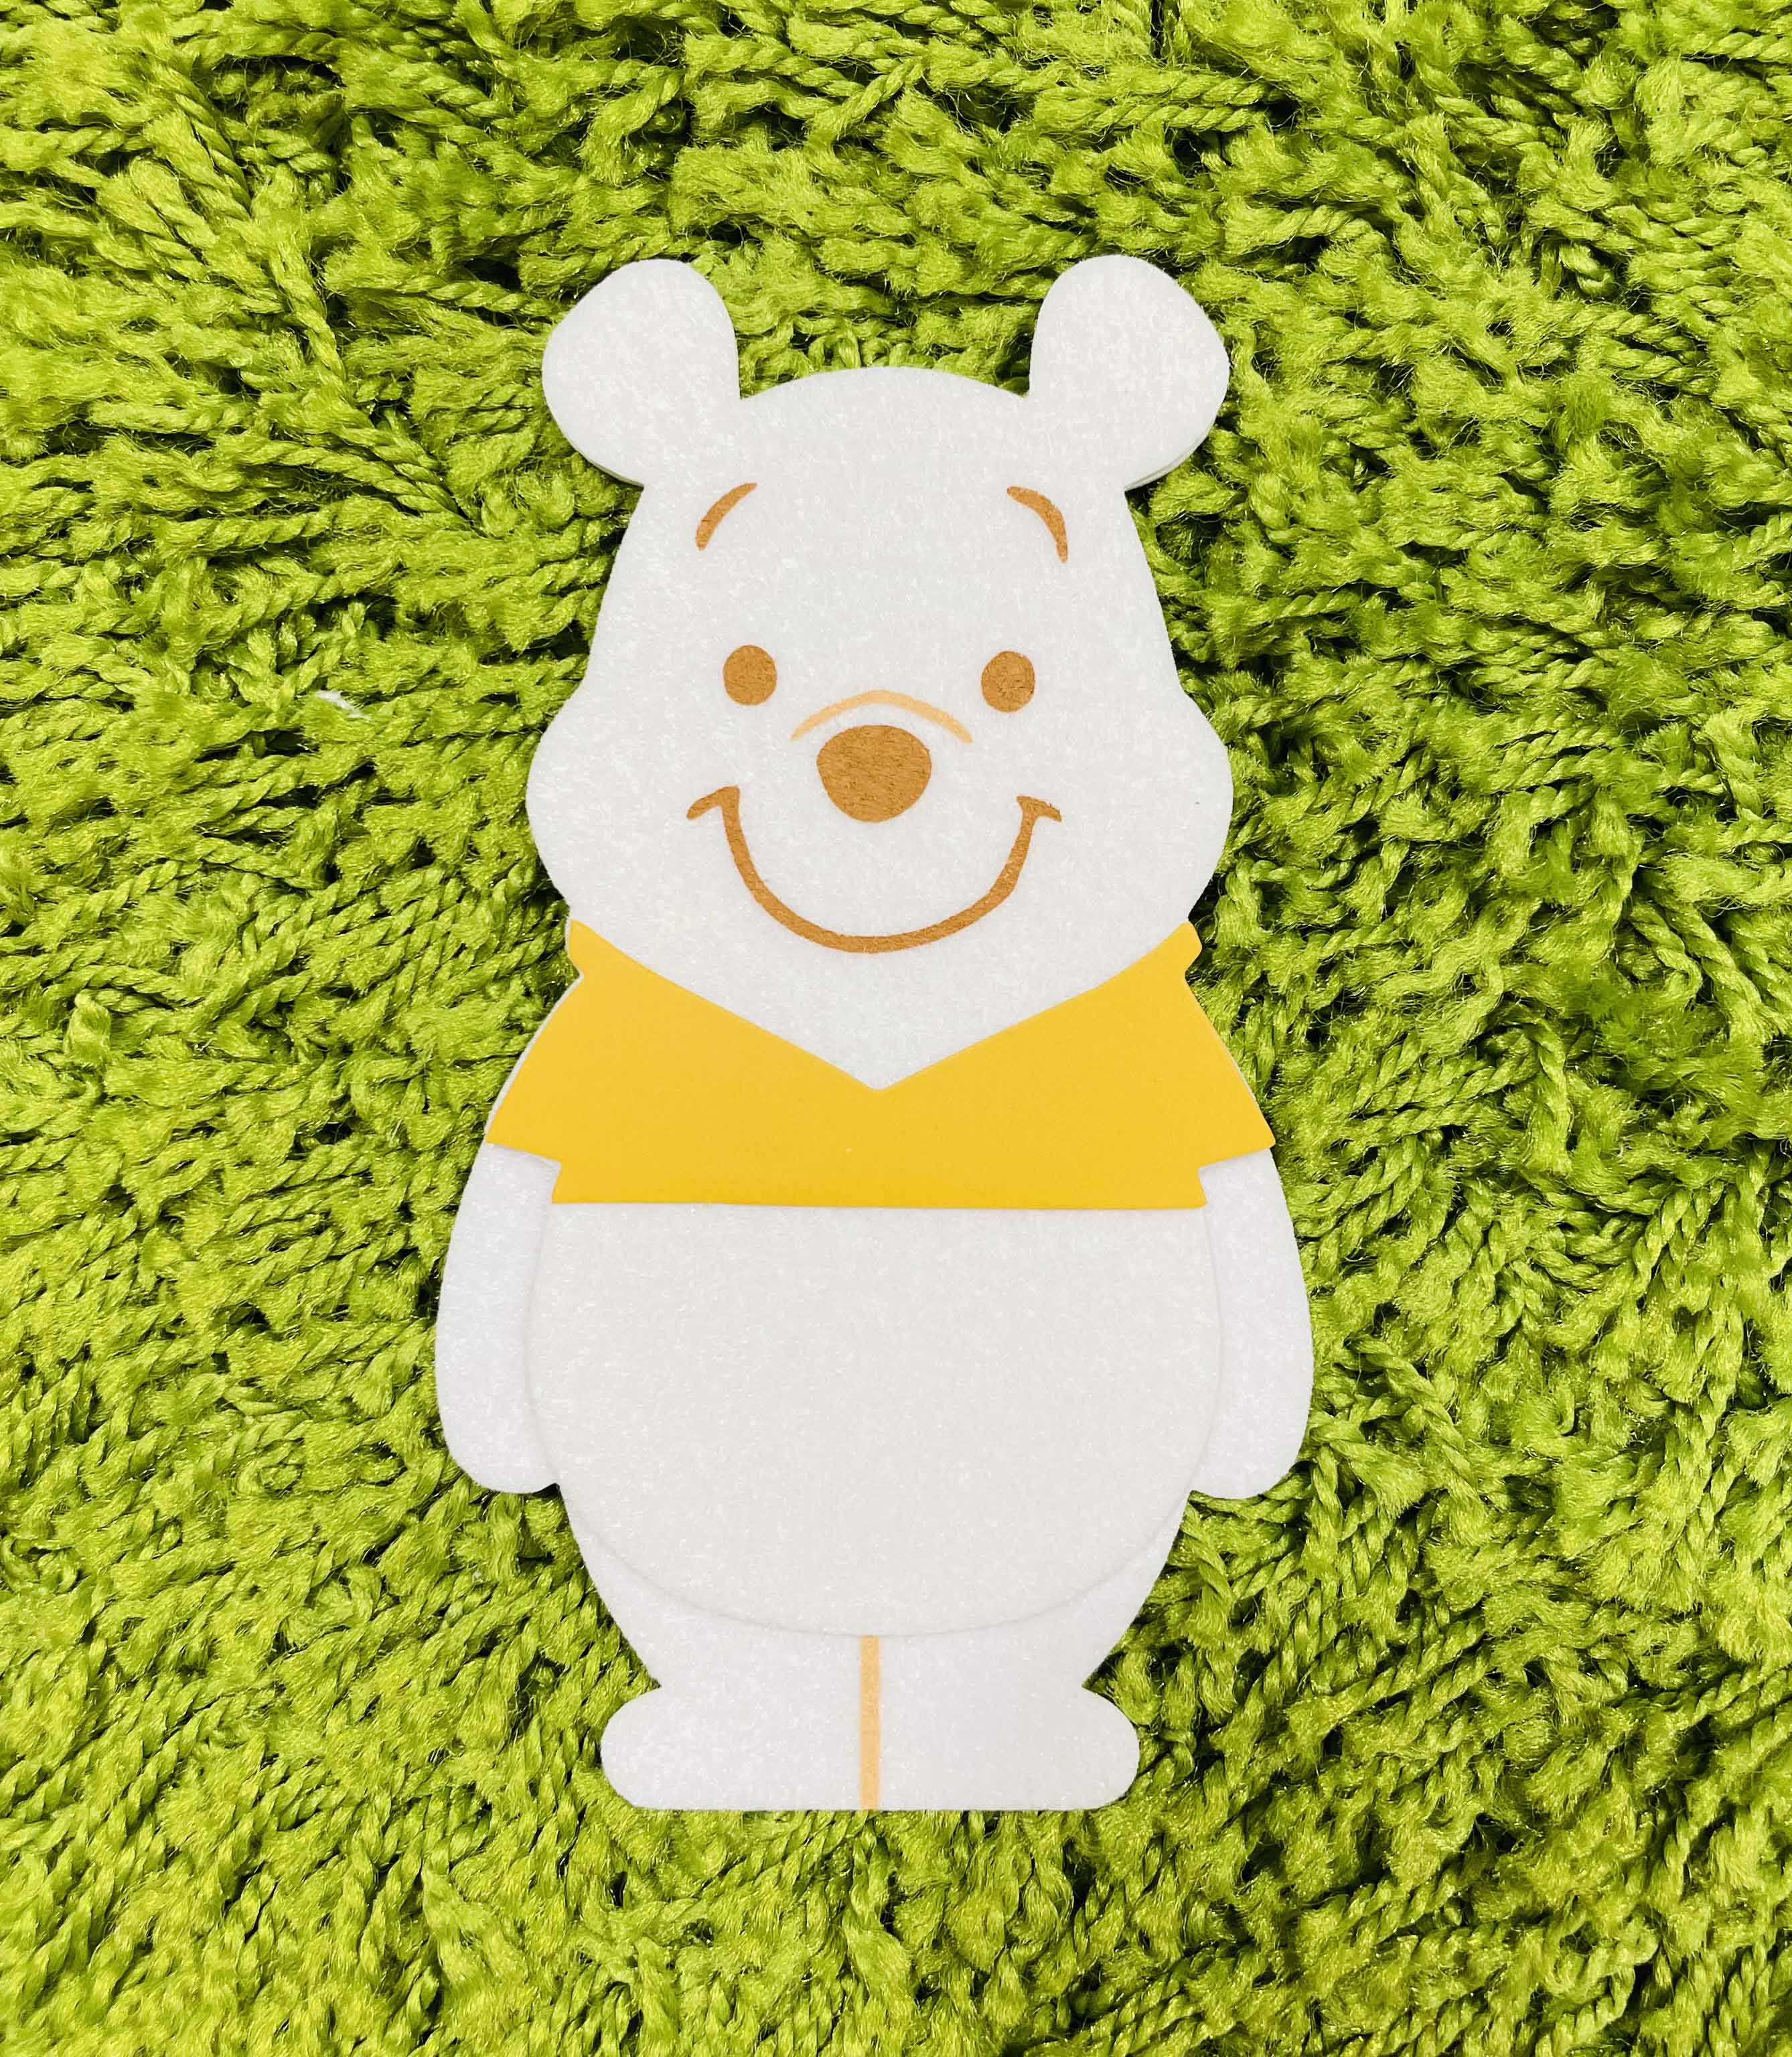 【震撼精品百貨】Winnie the Pooh 小熊維尼~日本Disney迪士尼 小熊維尼紅包袋 禮金袋-白*88818